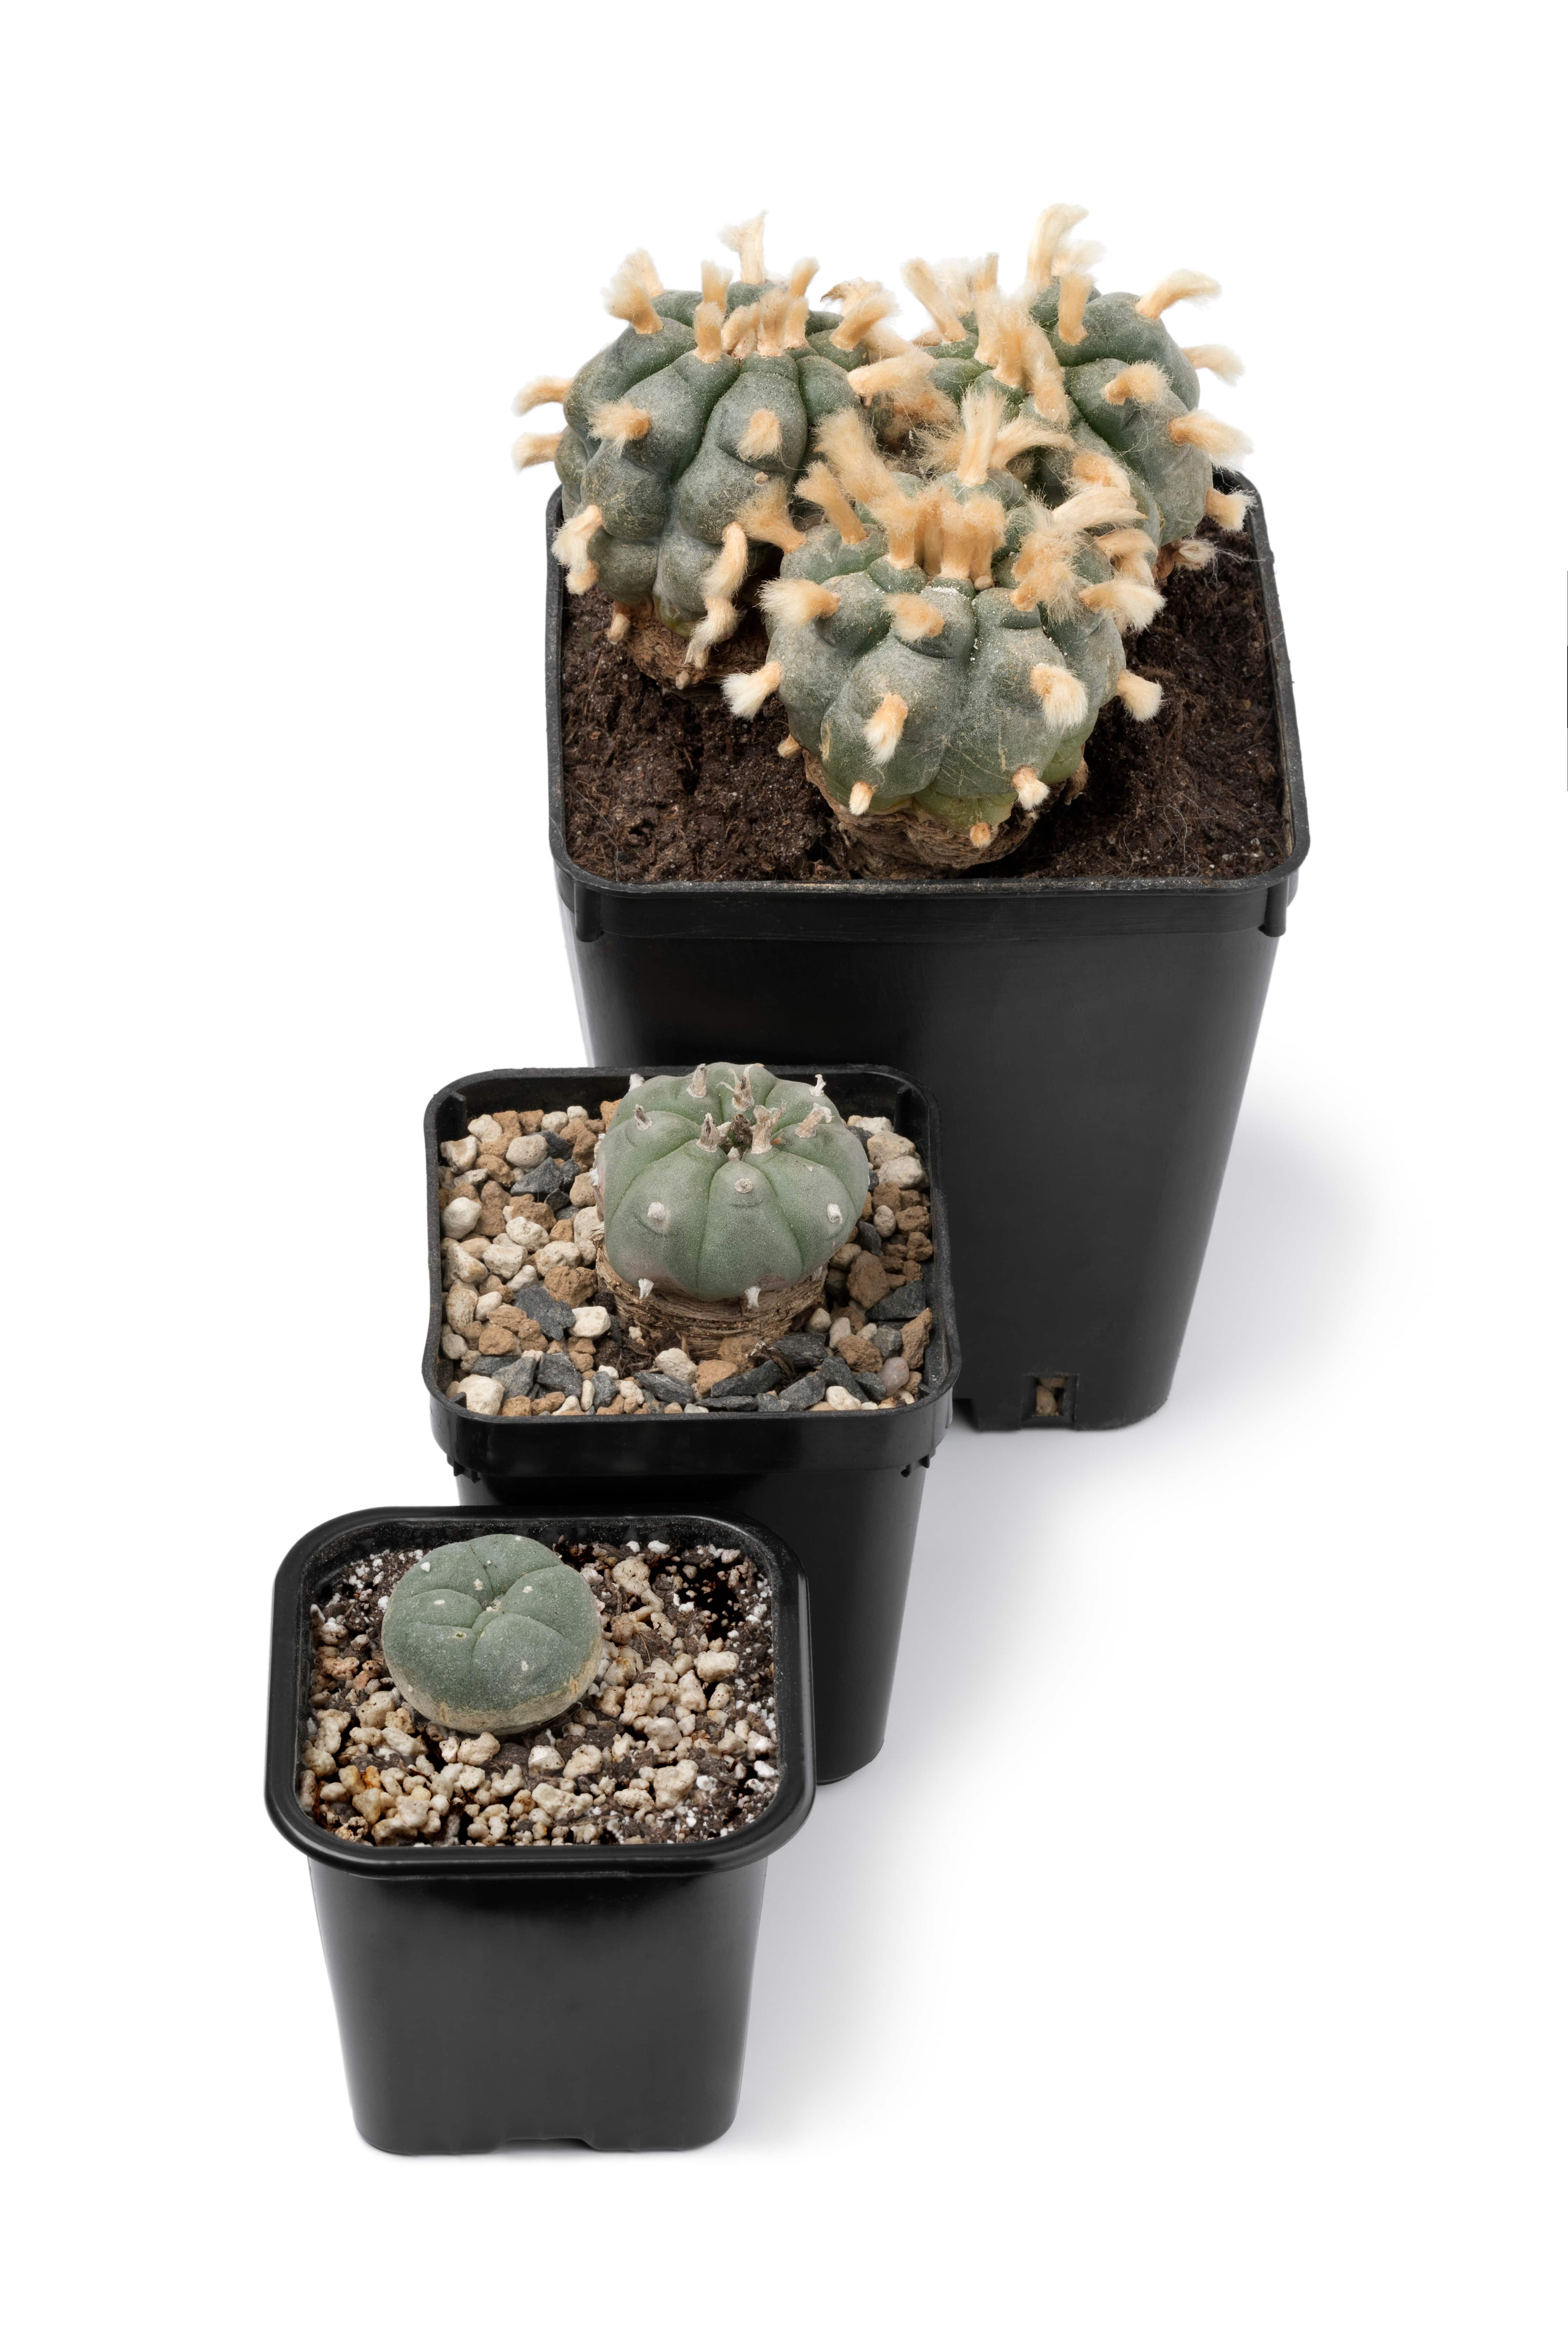 Évolution du cactus - jeune à âgé (avec aréoles)